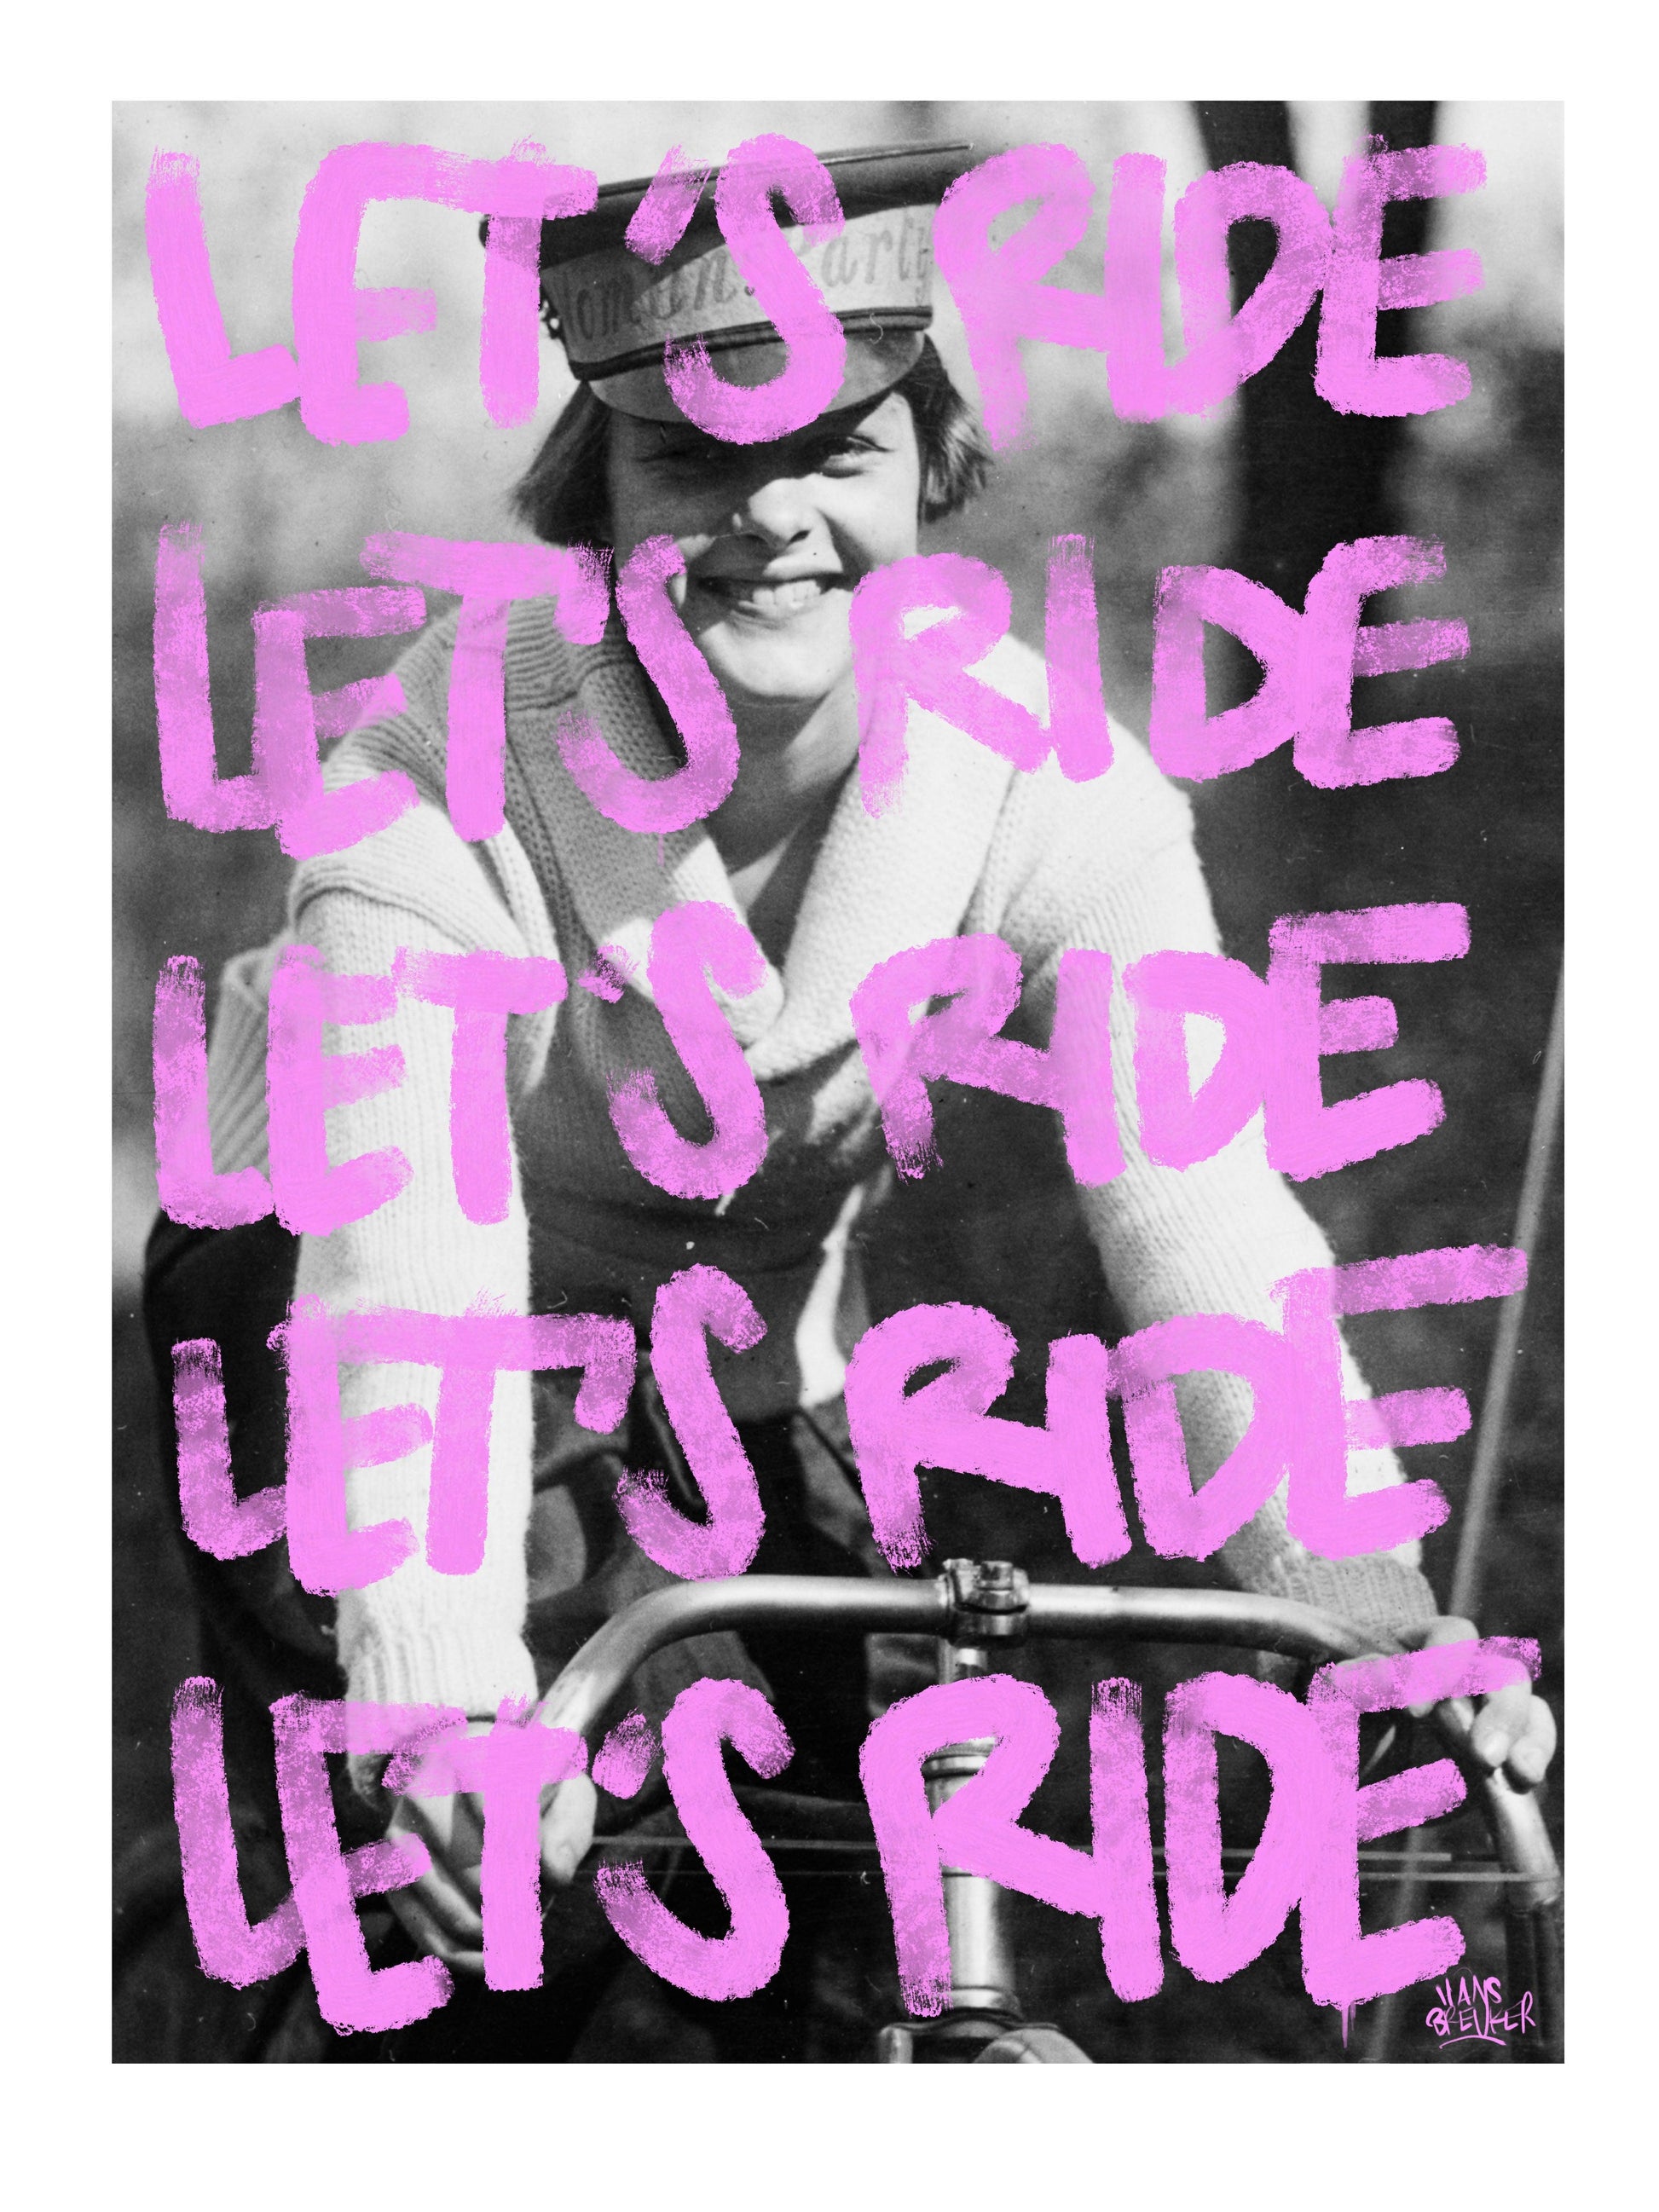 Let's ride - Hans Breuker